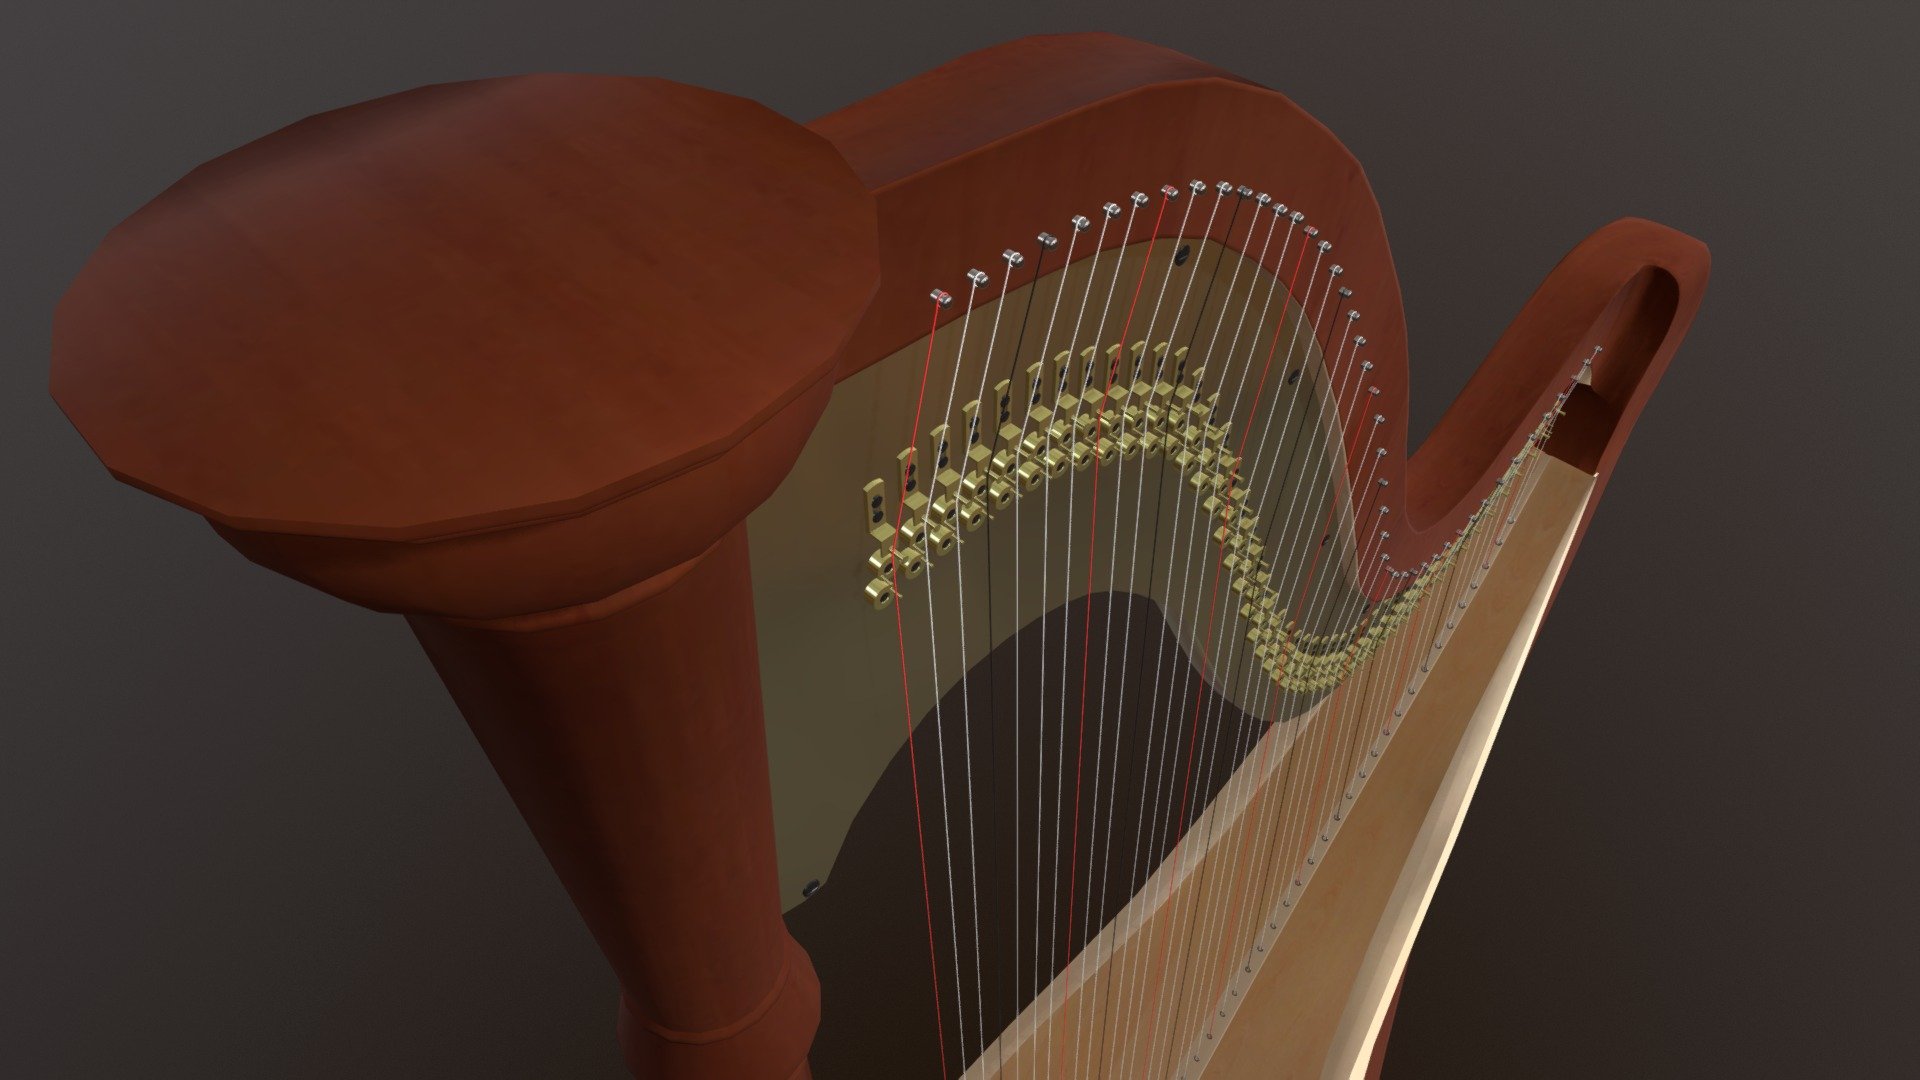 A Harp